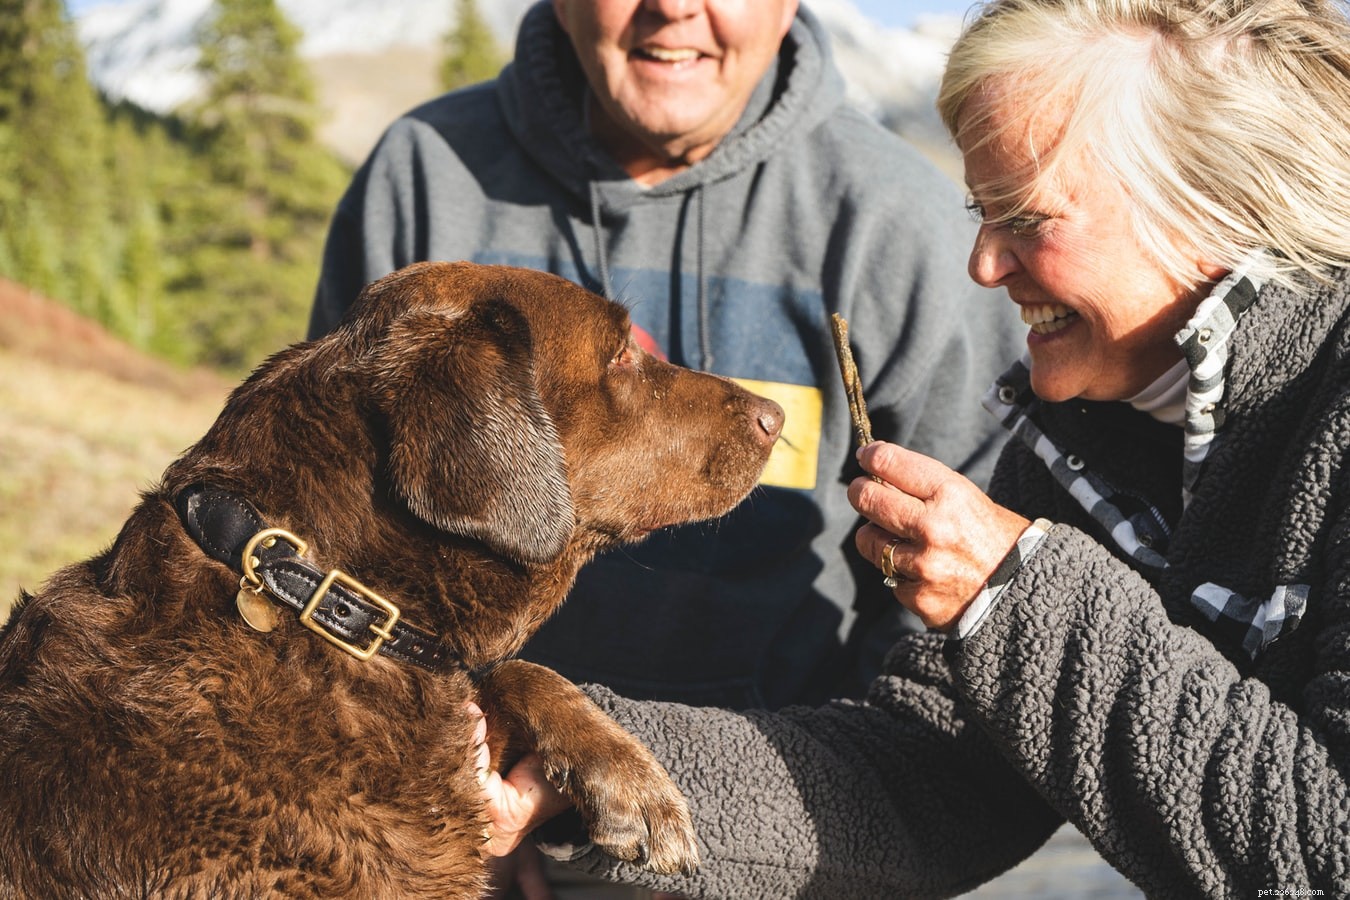 Comment assurer une excellente expérience de pension pour animaux ?